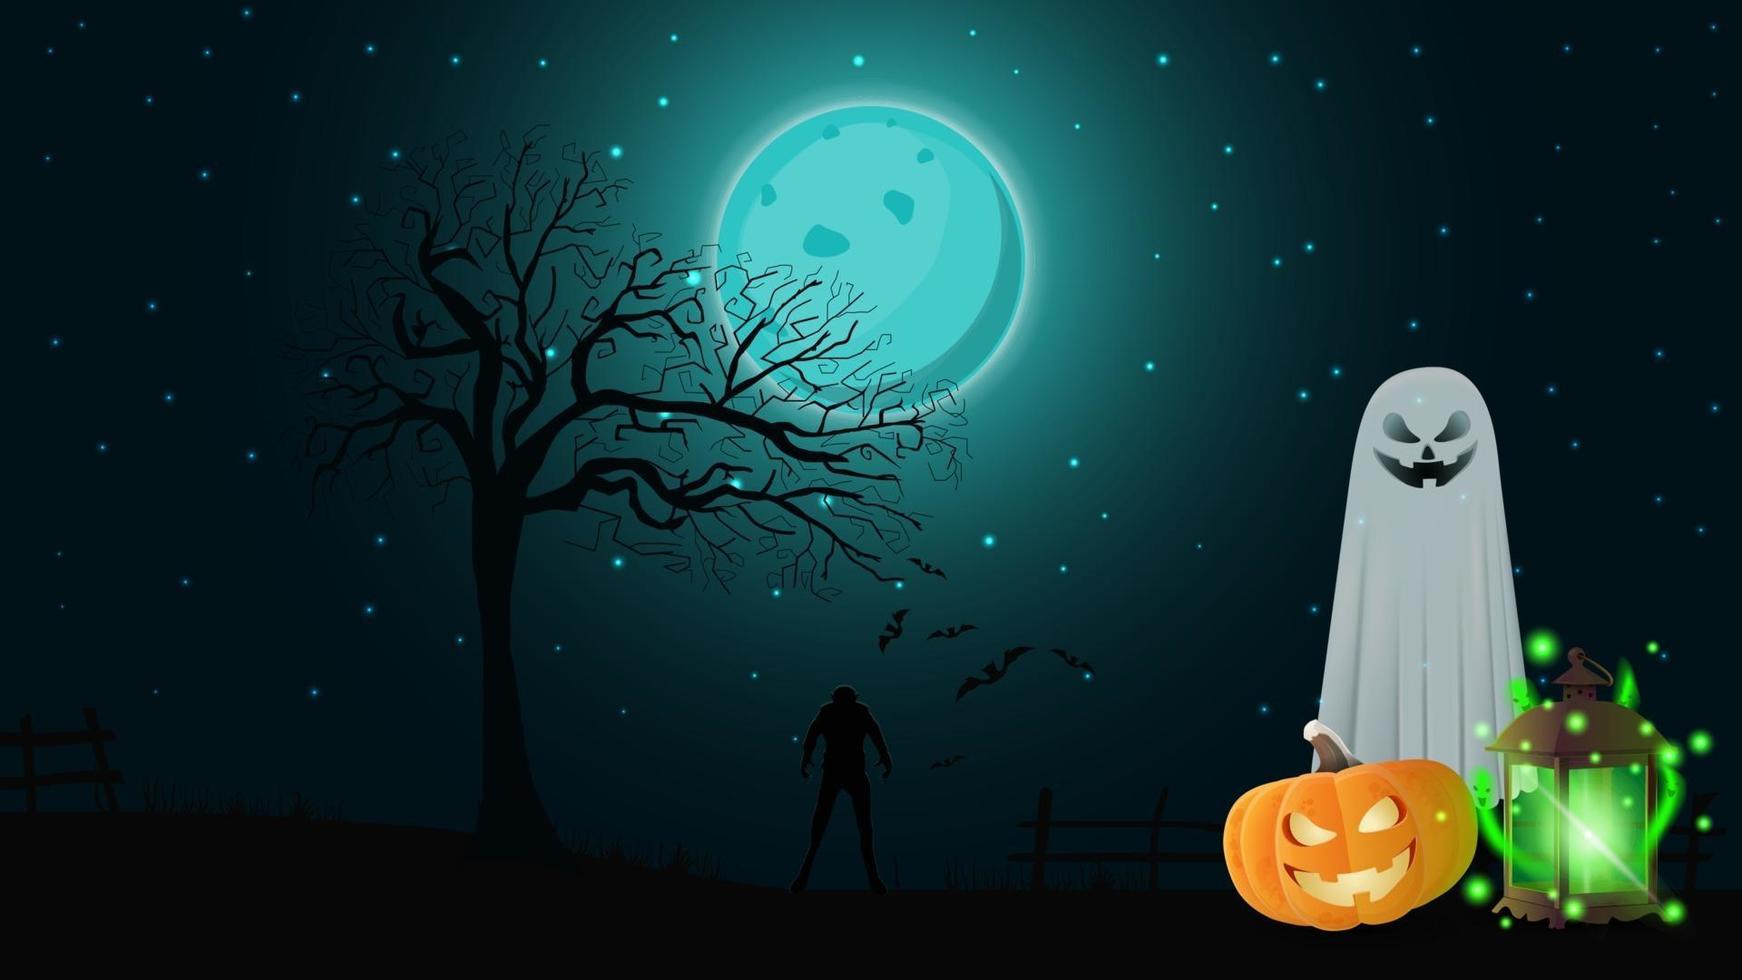 fond d'halloween pour votre créativité avec paysage nocturne, fantômes, citrouille jack et ancienne lanterne avec fantômes vecteur